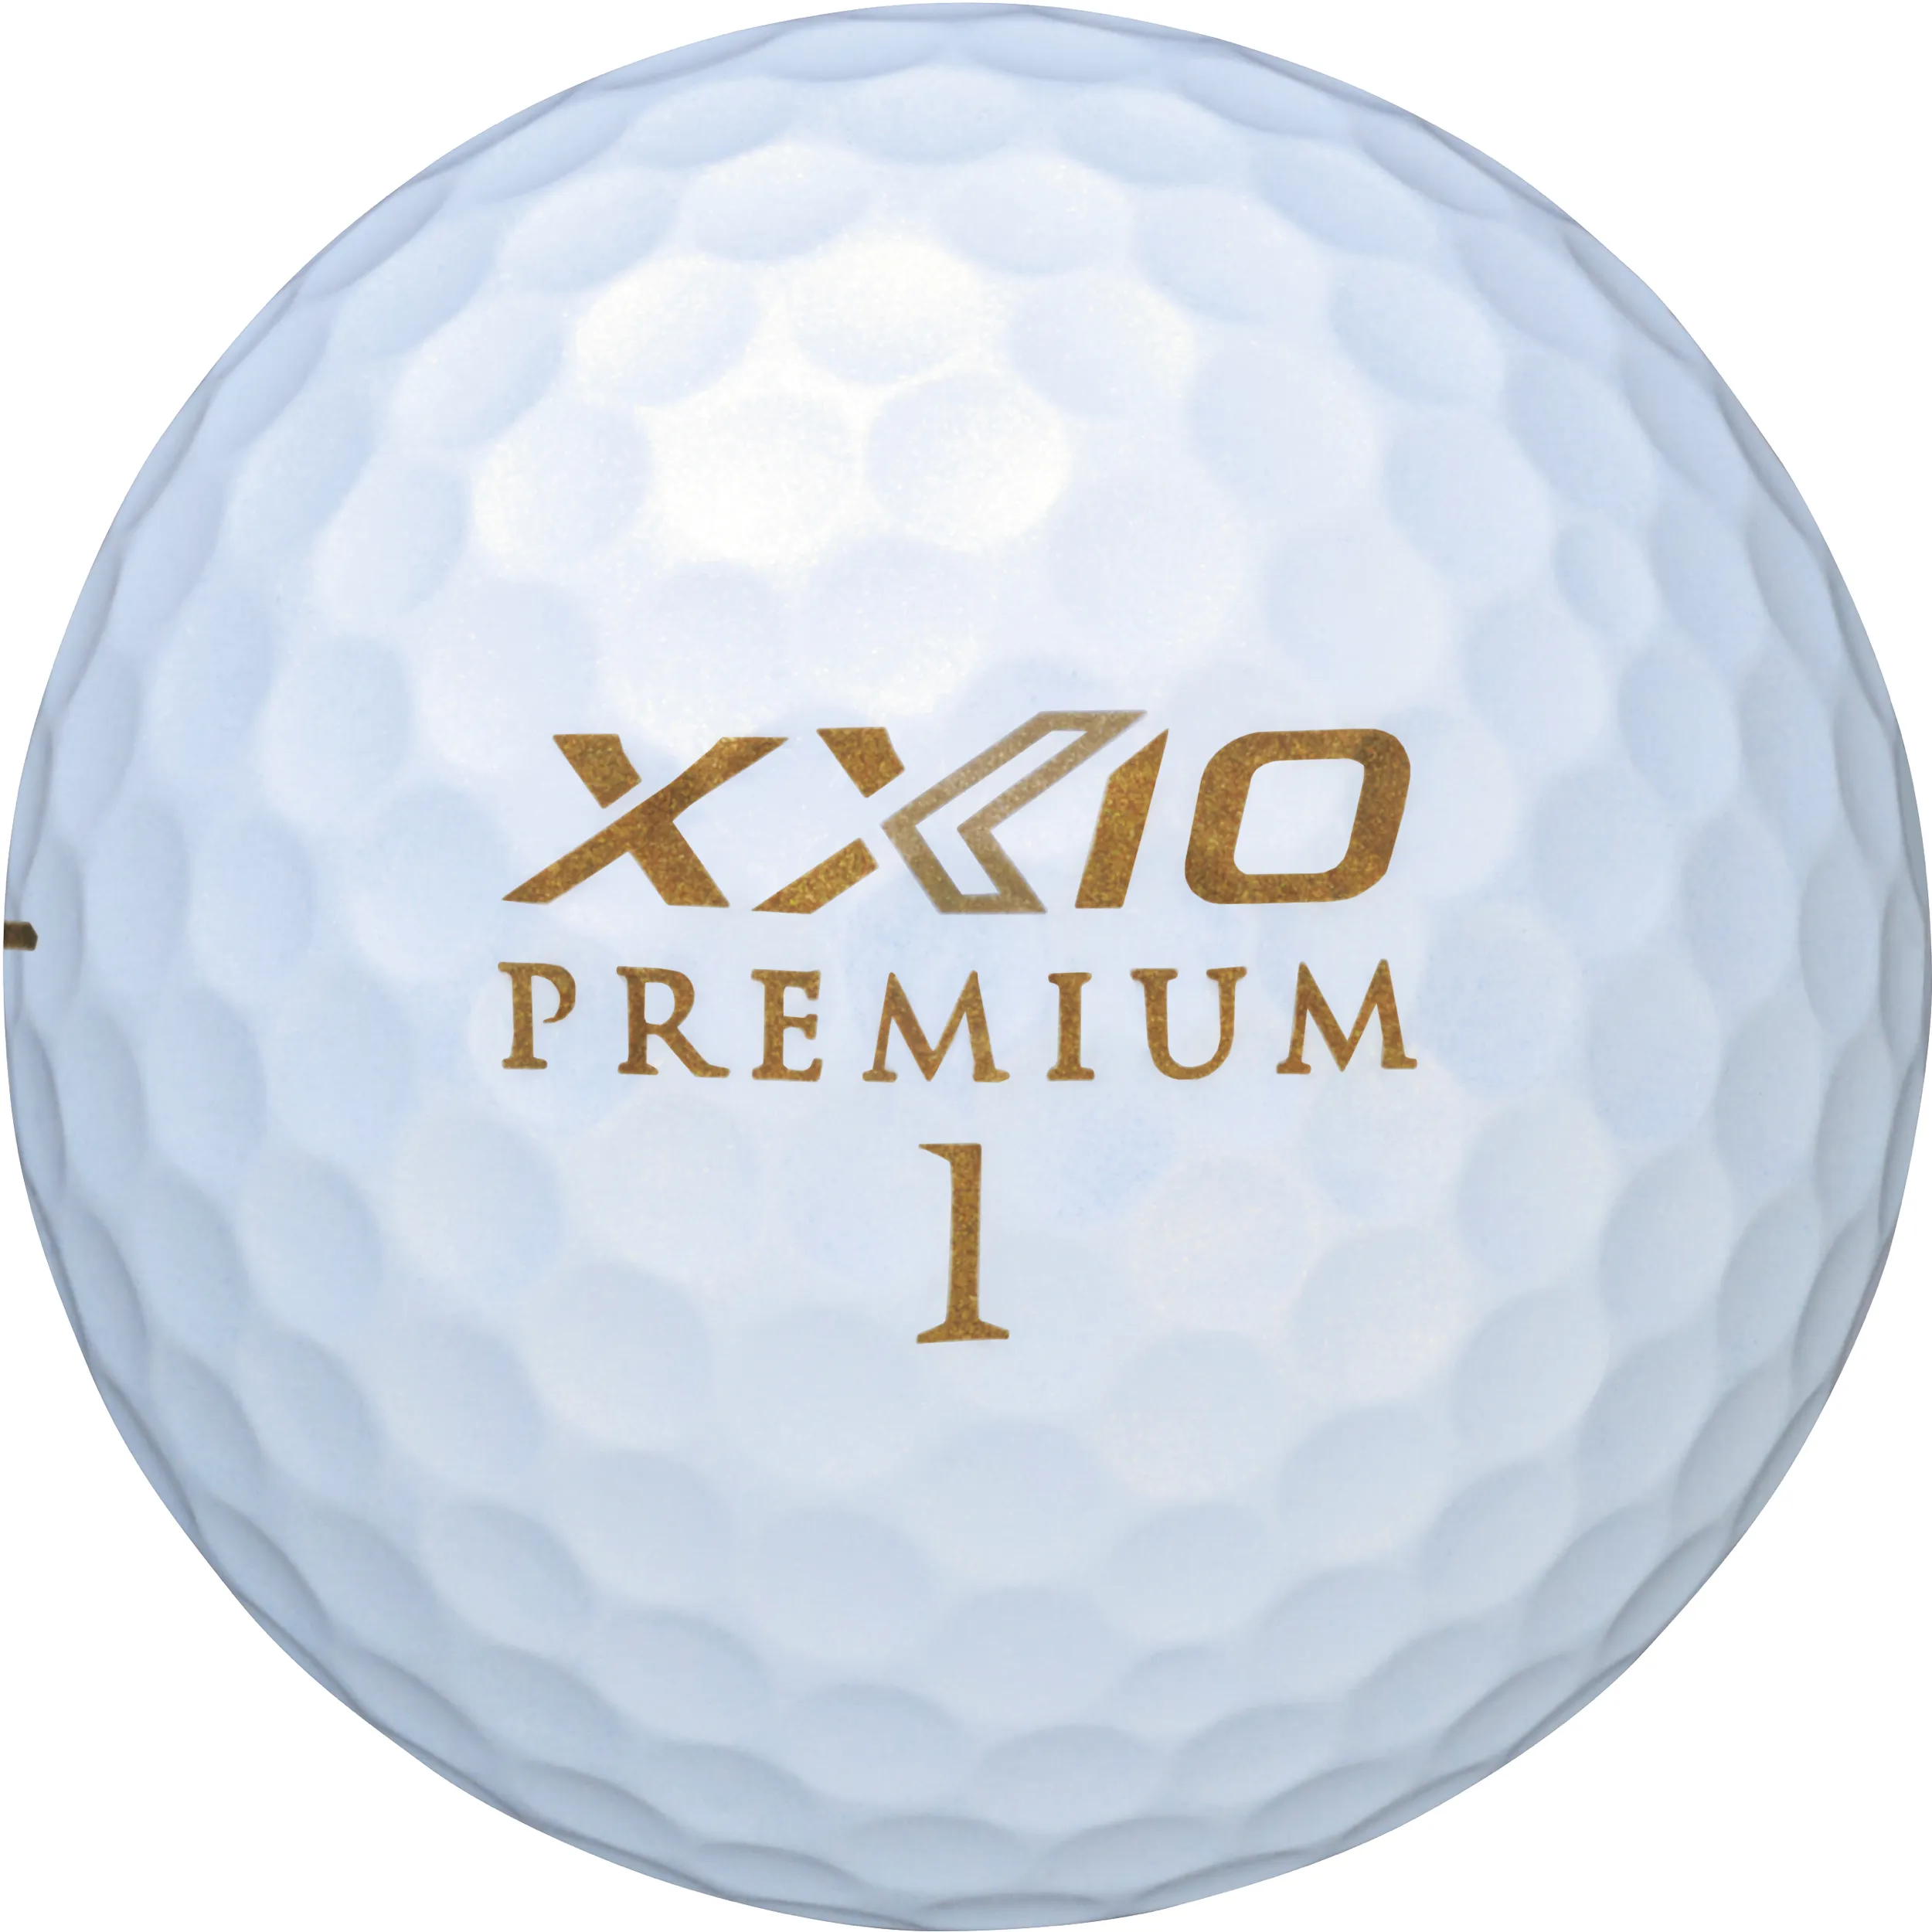 XXIO Premium Golfbälle, white